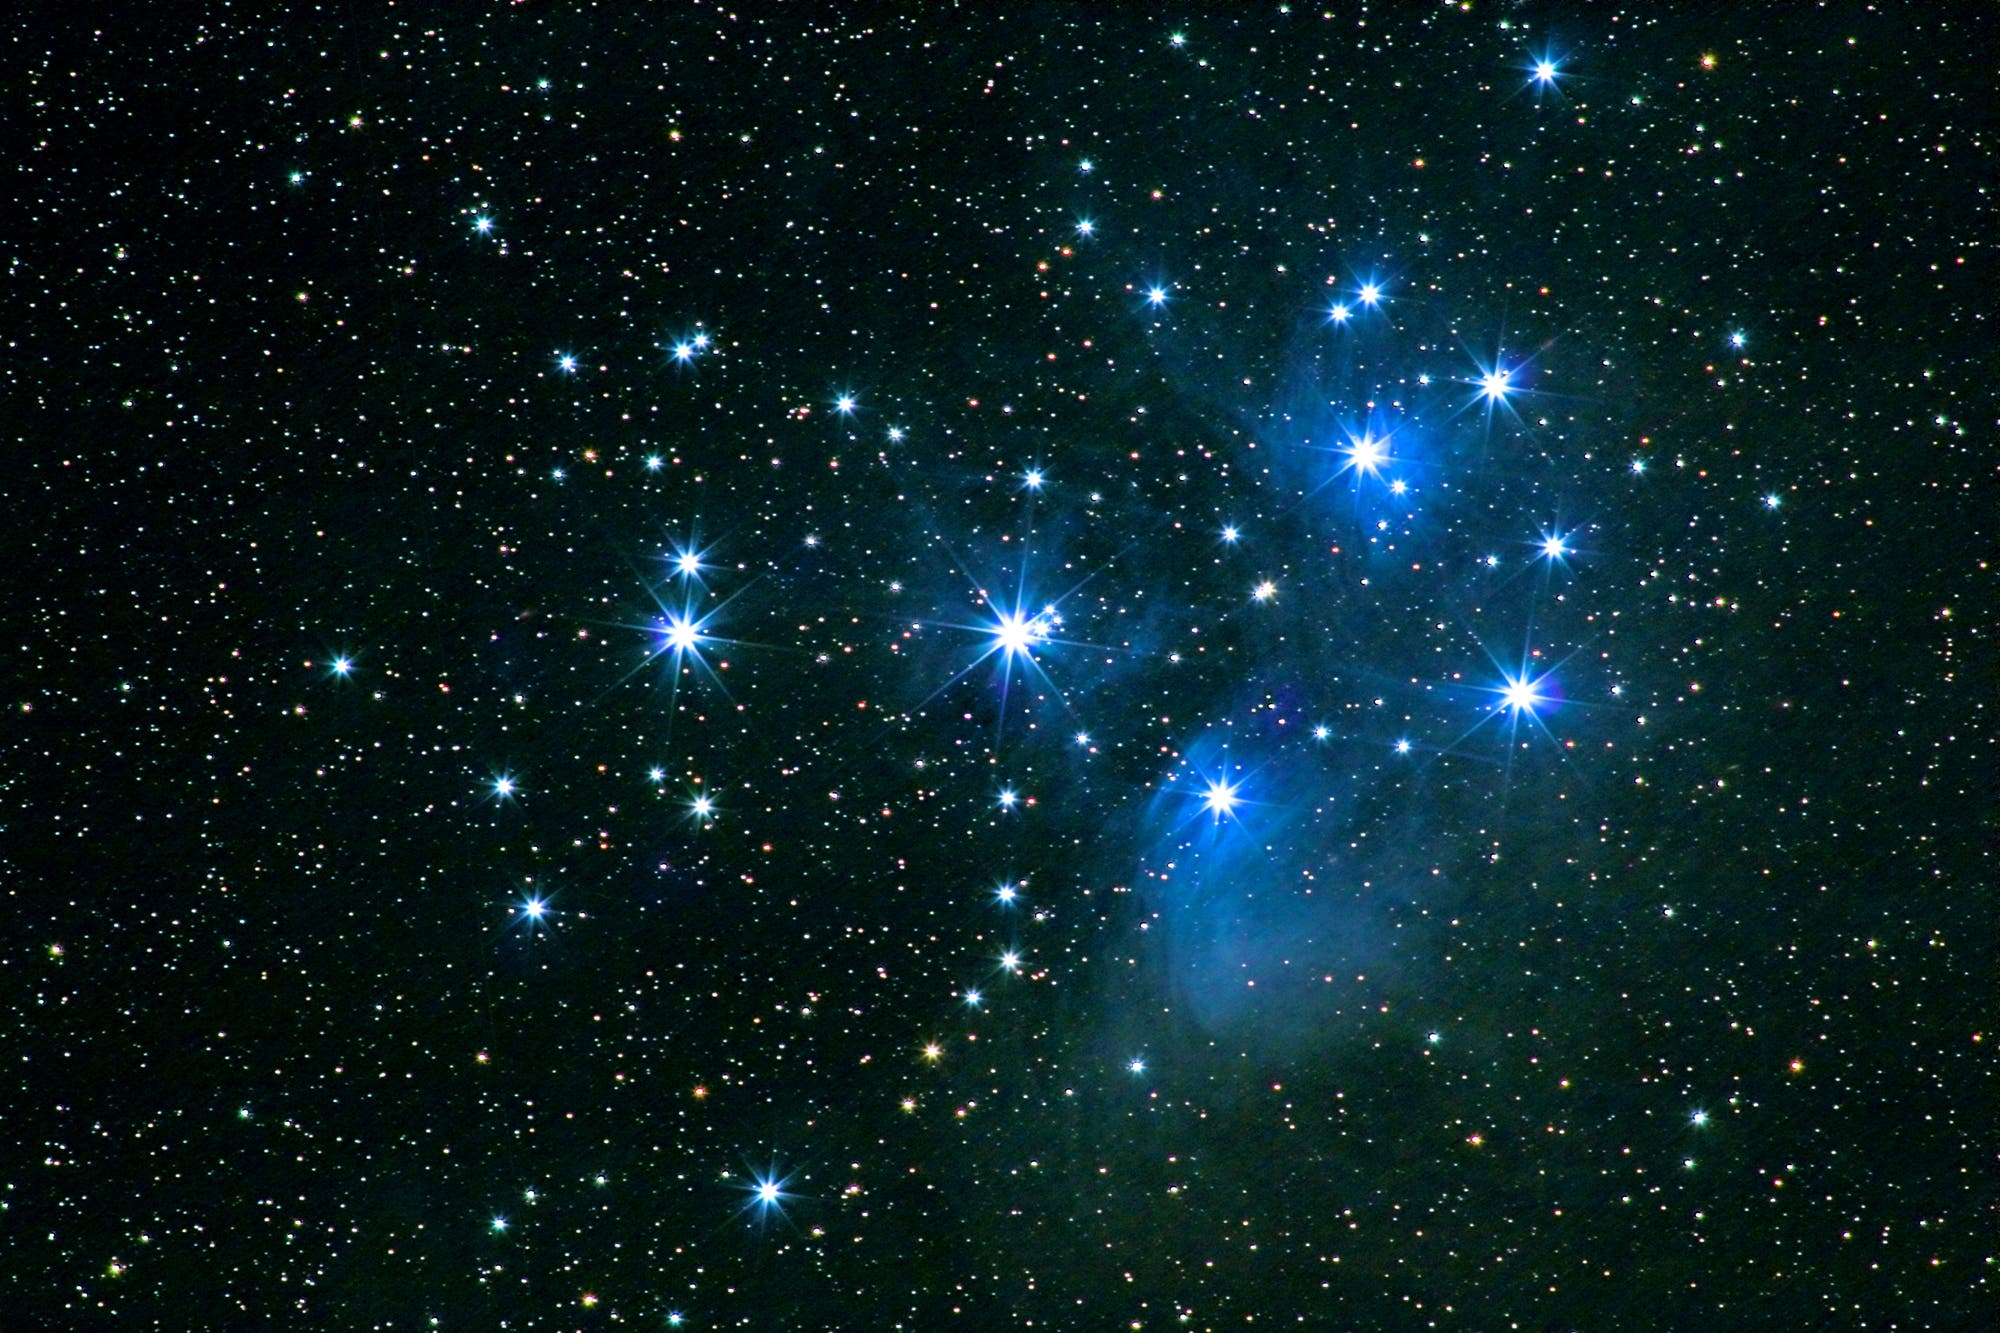 Plejaden - Messier 45